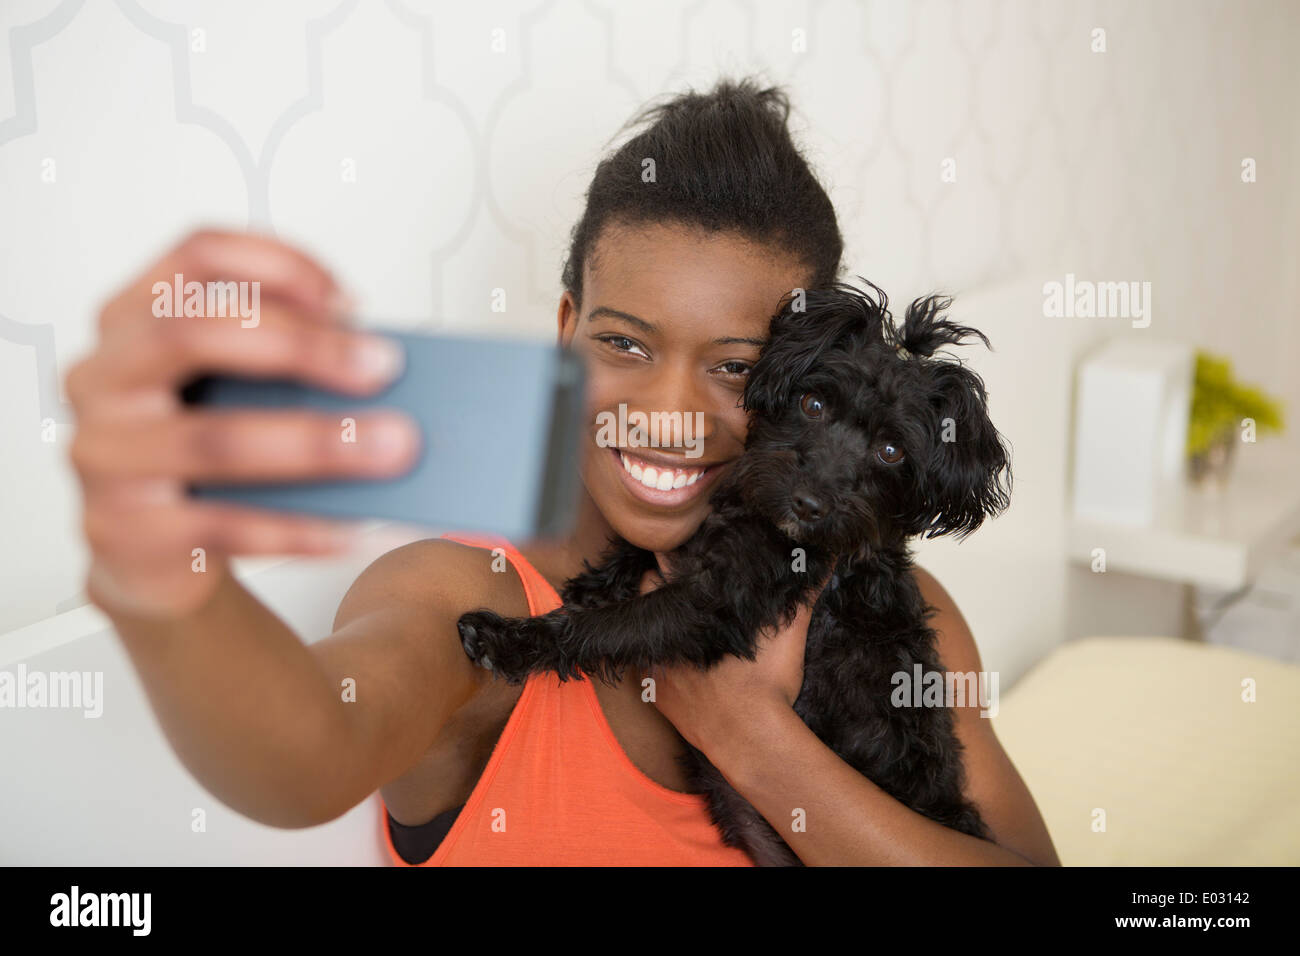 Una giovane ragazza tenendo un selfy del suo piccolo cane e se stessa. Foto Stock